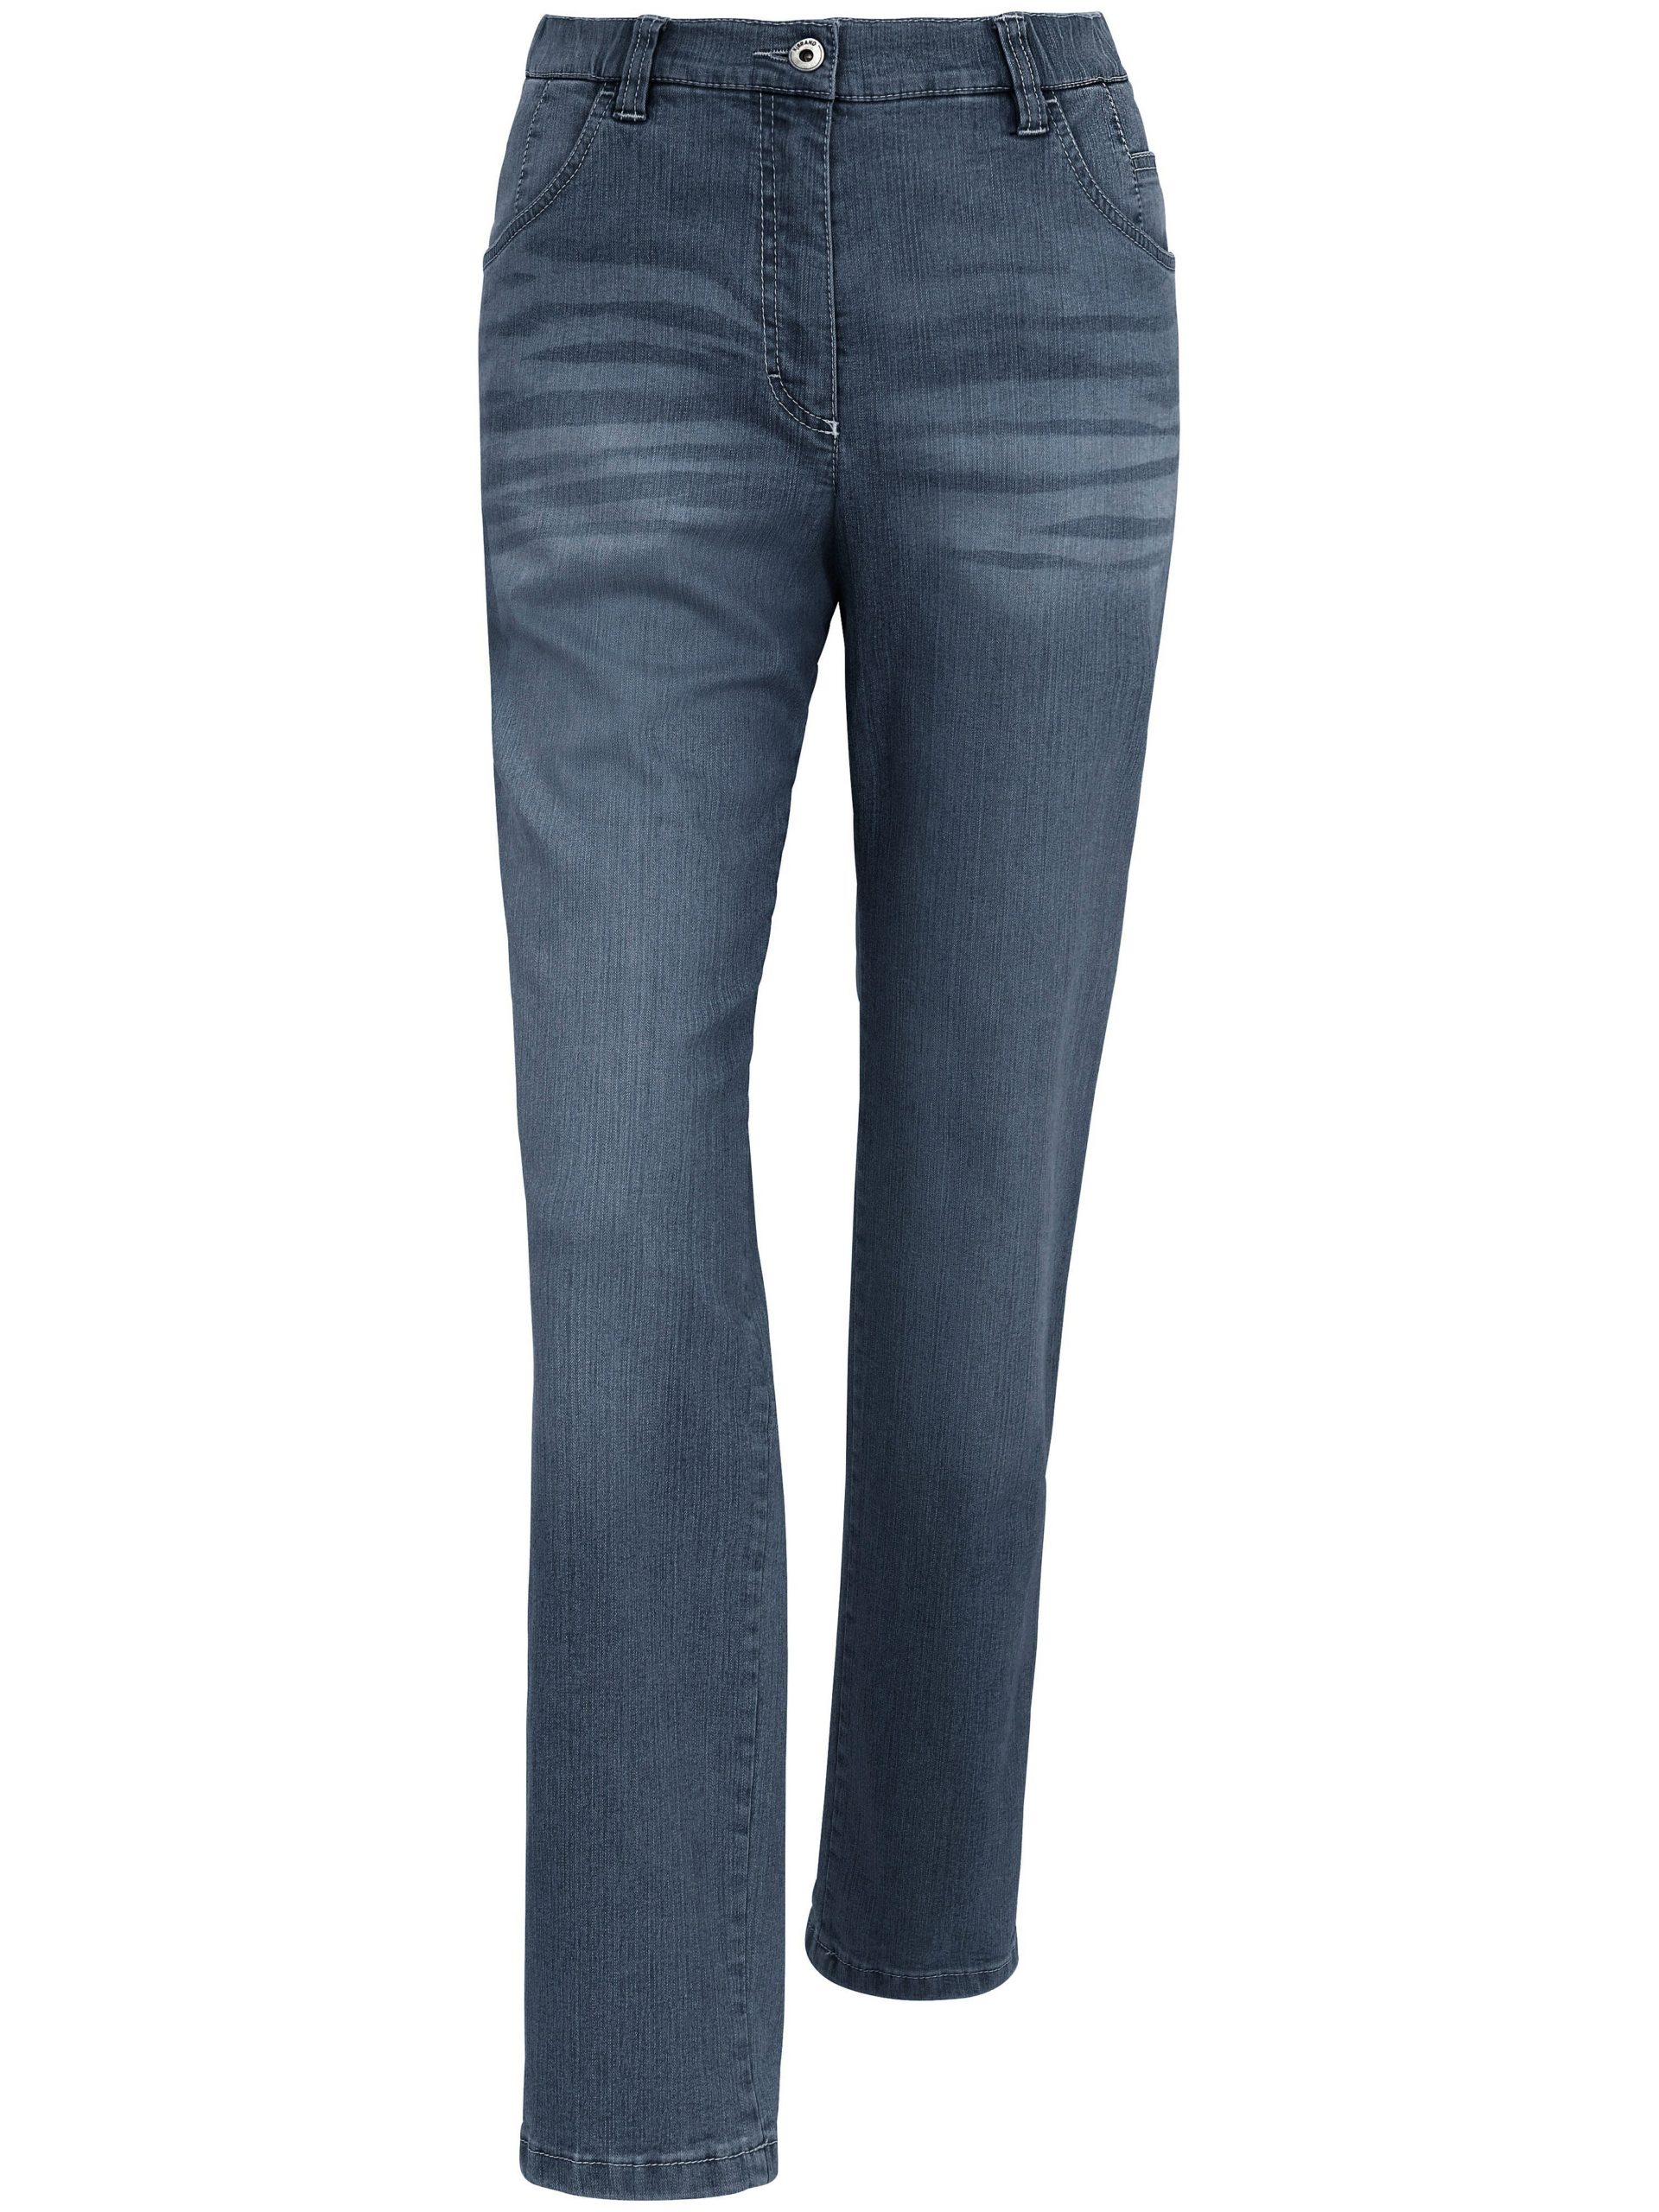 Enkellange jeans Van KjBrand blauw Kopen